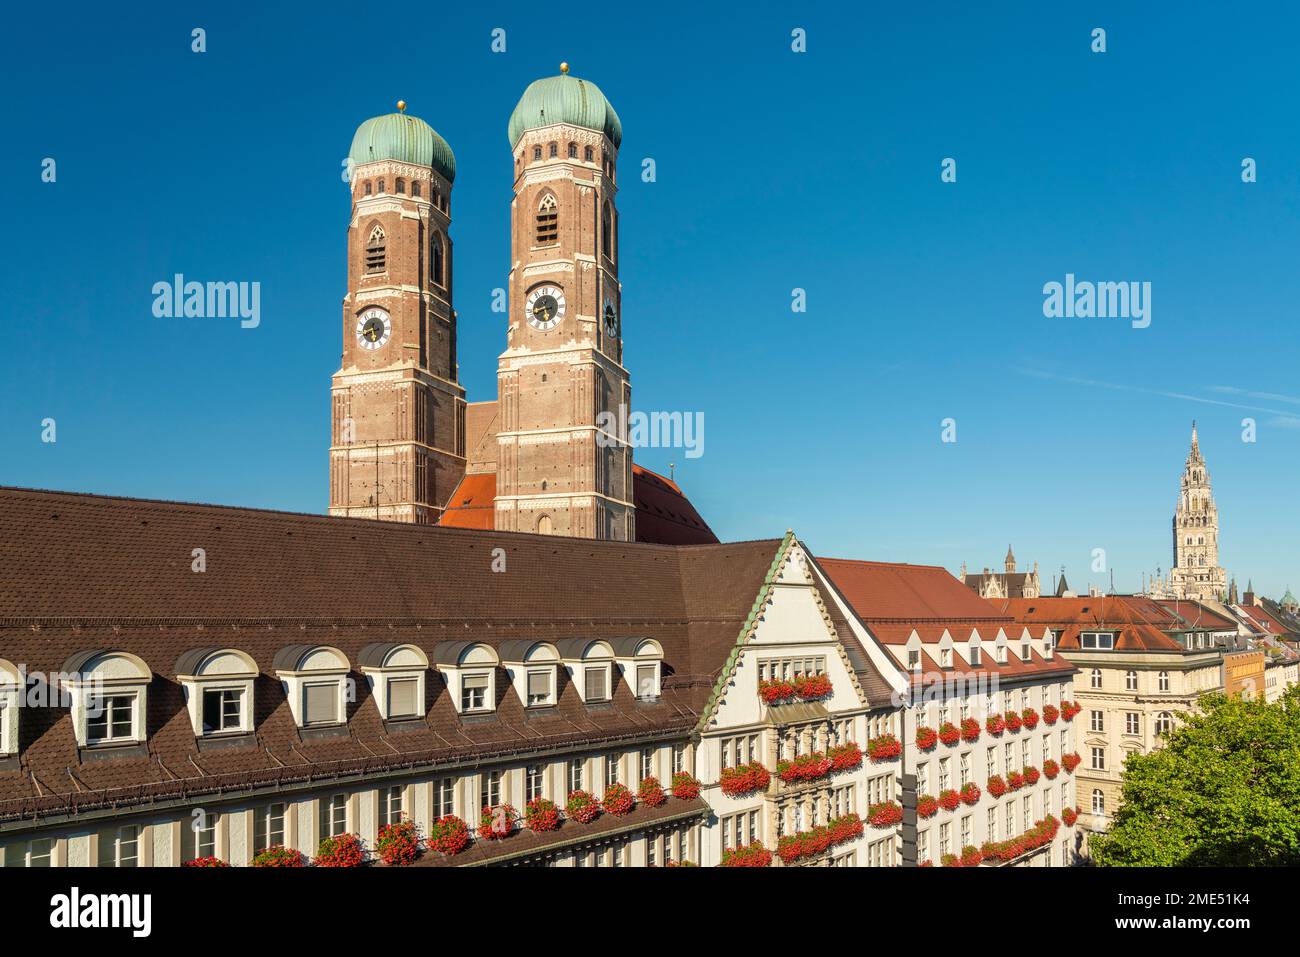 Germania, Monaco, edificio storico lungo Kaufingerstrasse con i campanili di Frauenkirche sullo sfondo Foto Stock